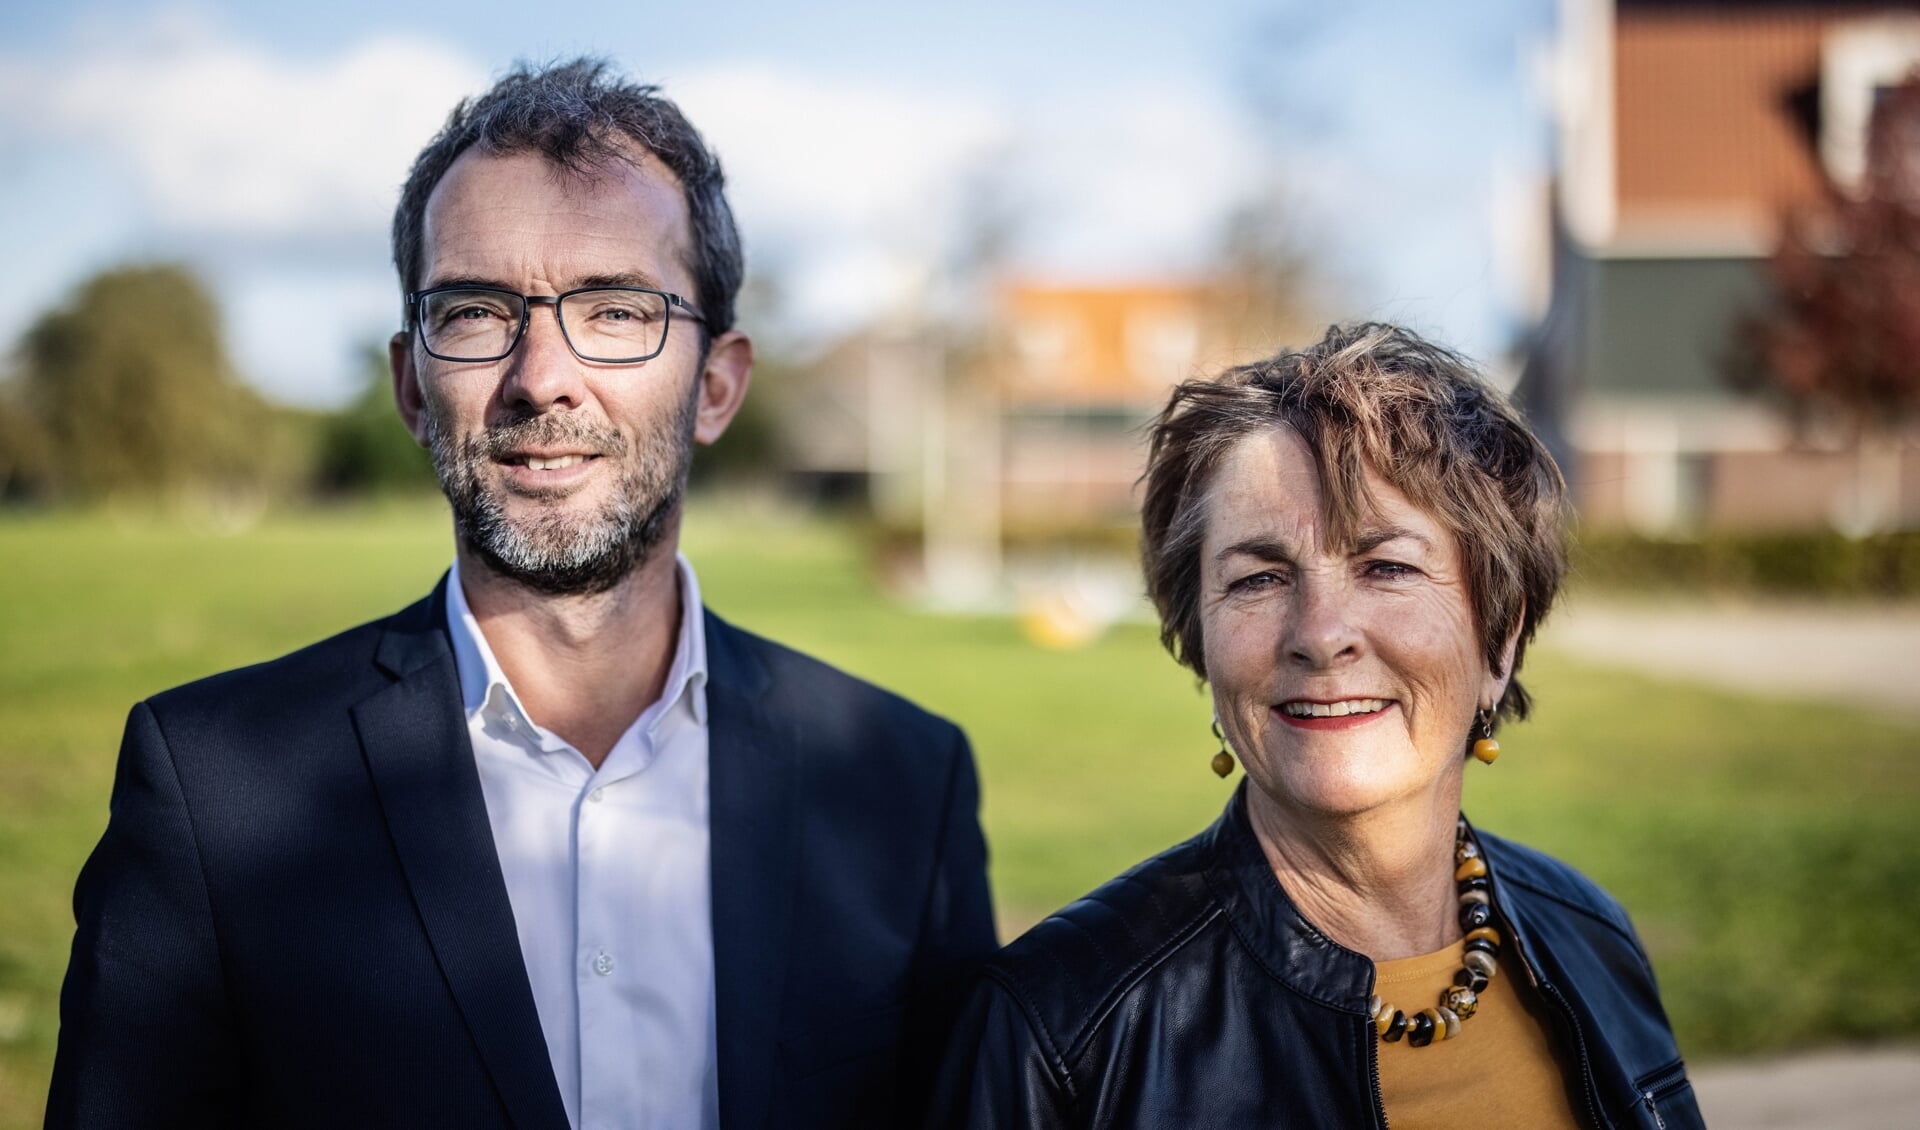 Met de keuze voor het bekende duo kiest de Landsmeerse VVD voor politieke continuïteit en veel bestuurlijke ervaring.